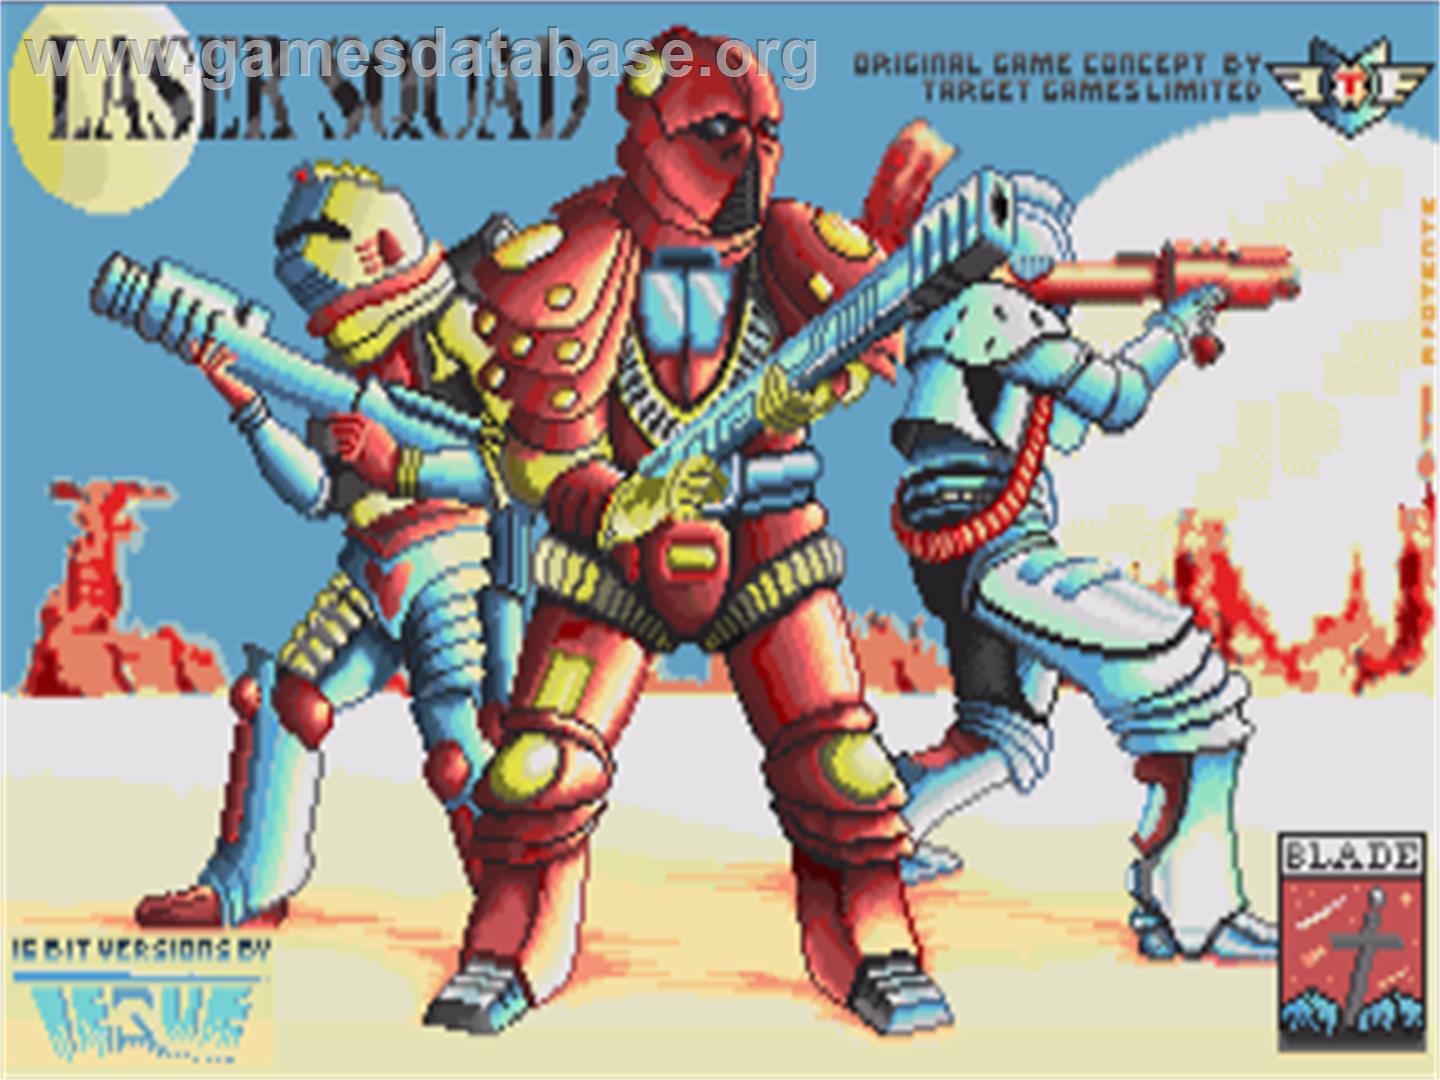 Laser Squad - Commodore Amiga - Artwork - Title Screen